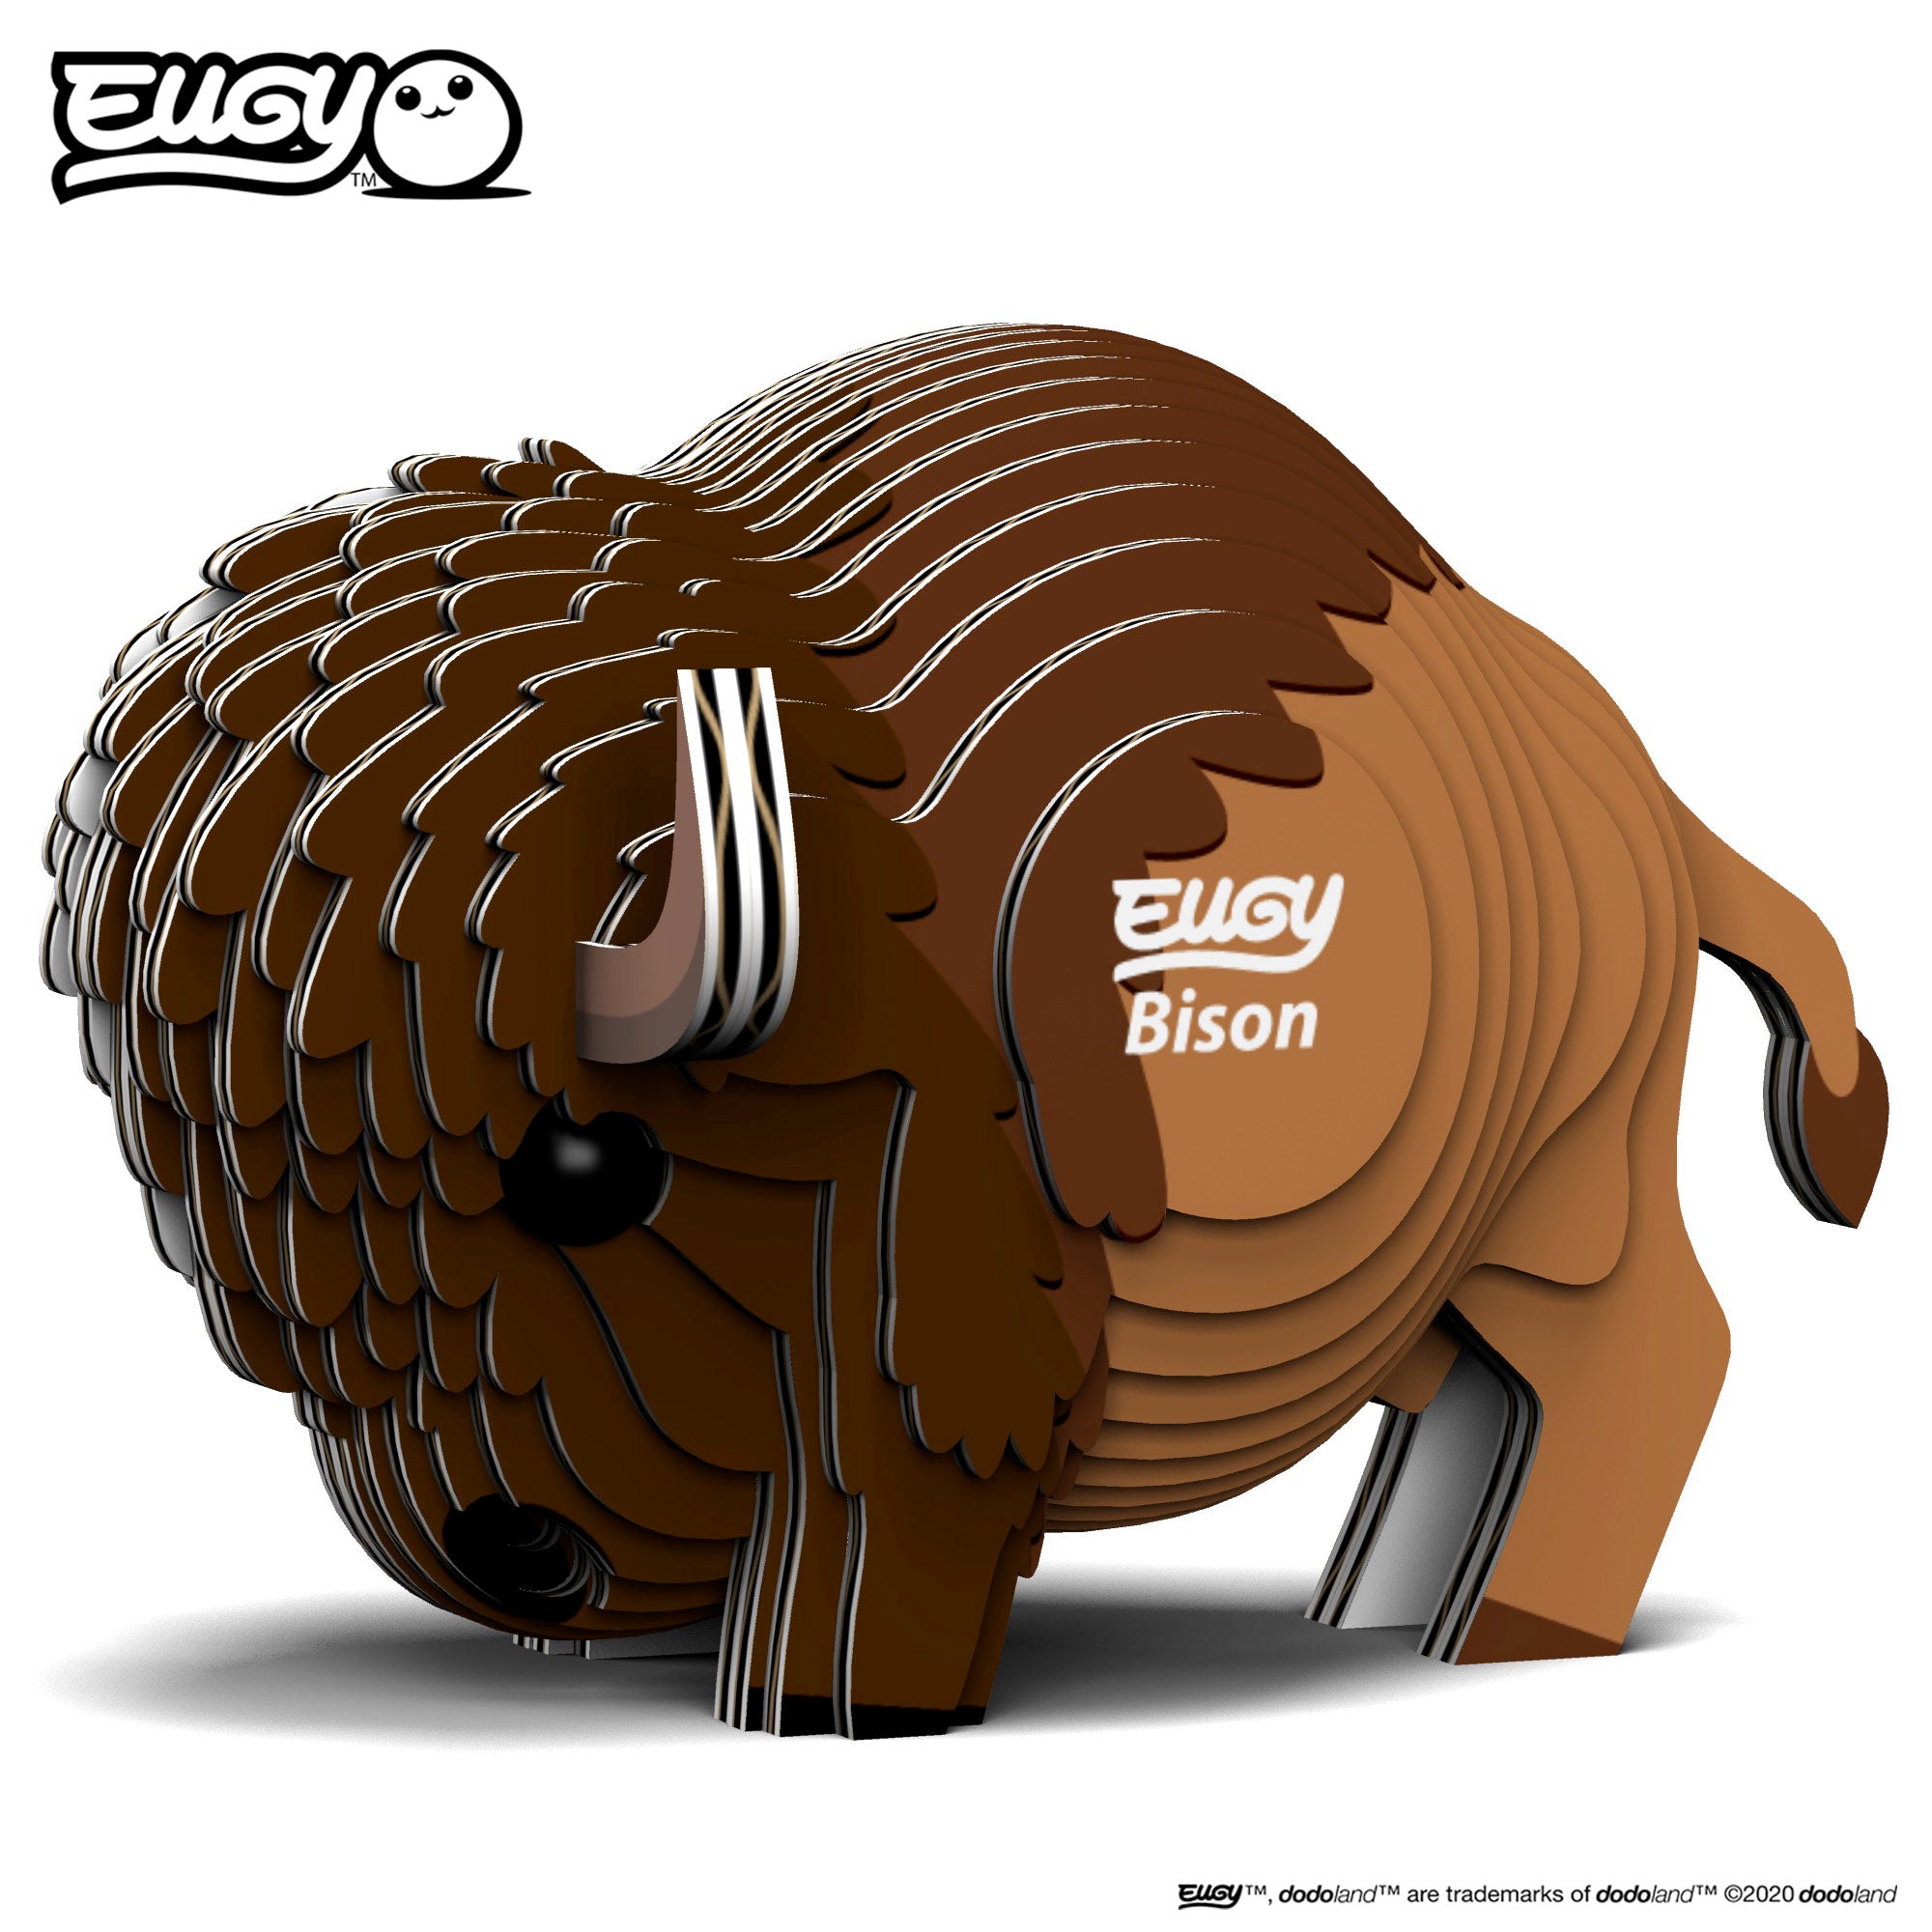 EUGY Bison - 3D Cardboard Model Kit